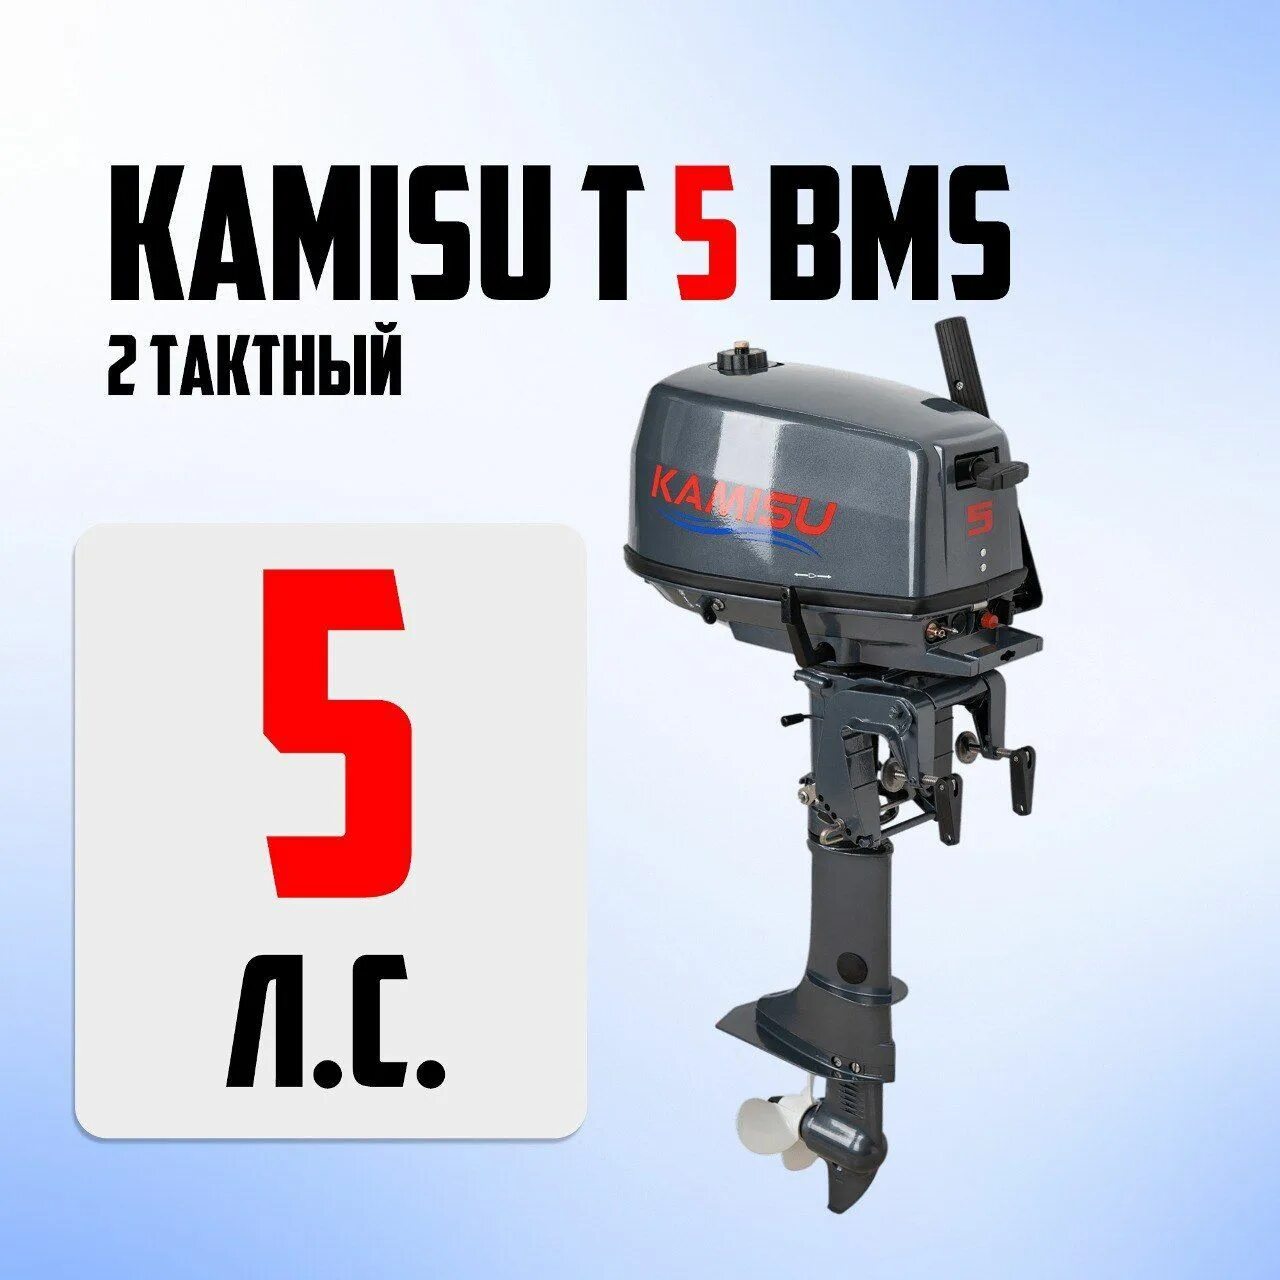 Kamisu лодочные моторы. Kamisu лодочные моторы производитель. Лодочный мотор 2-х тактный Jet! T2.6 BMS Silver. Лодочный мотор Kamisu f 5 BMS (4-Х тактный). Лодочный мотор камису купить